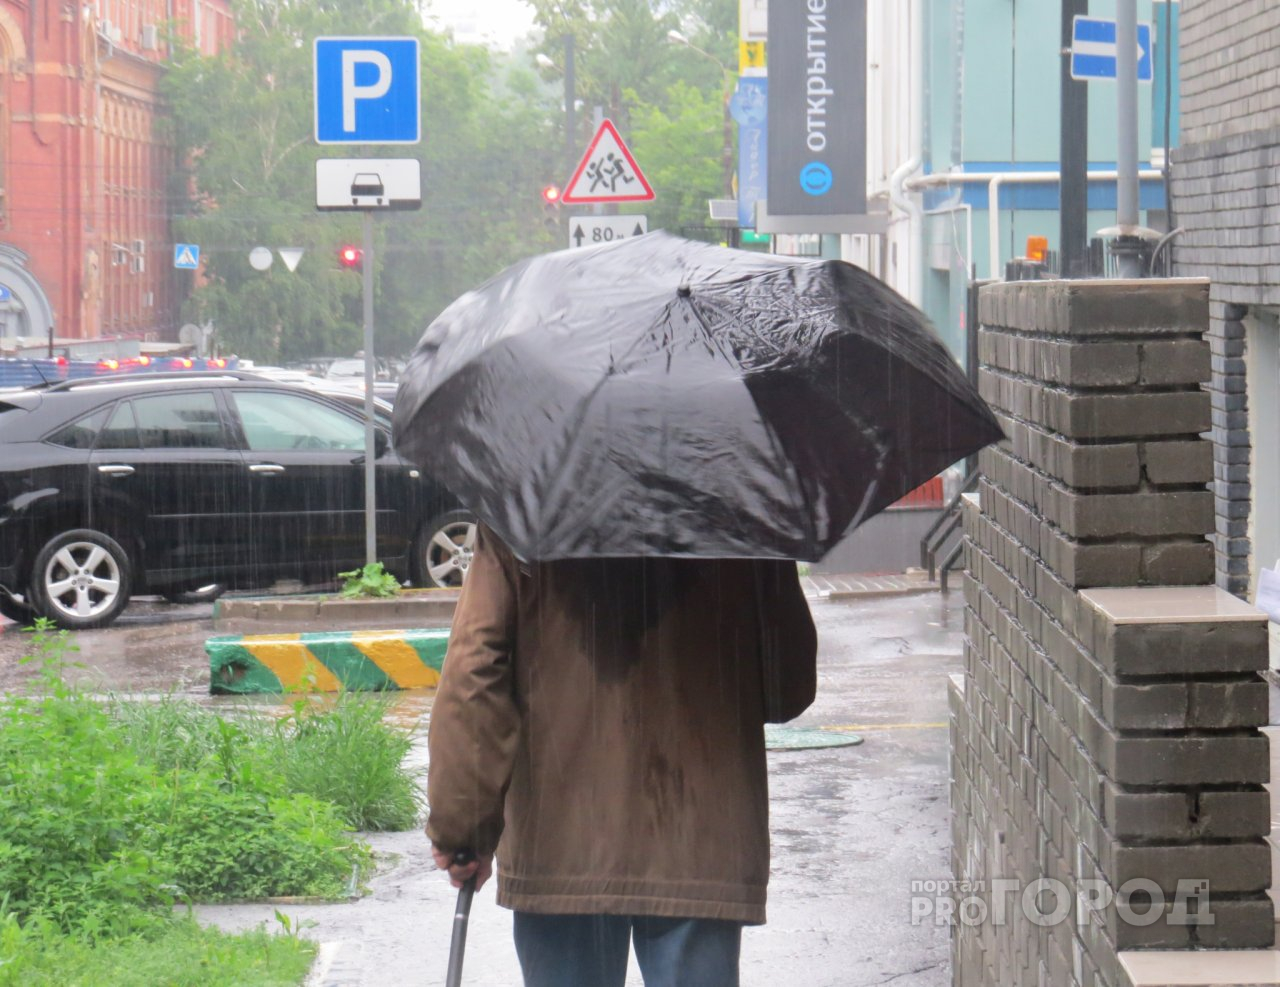 "Грозное" 9 Мая: о погоде в праздники рассказали ярославцам